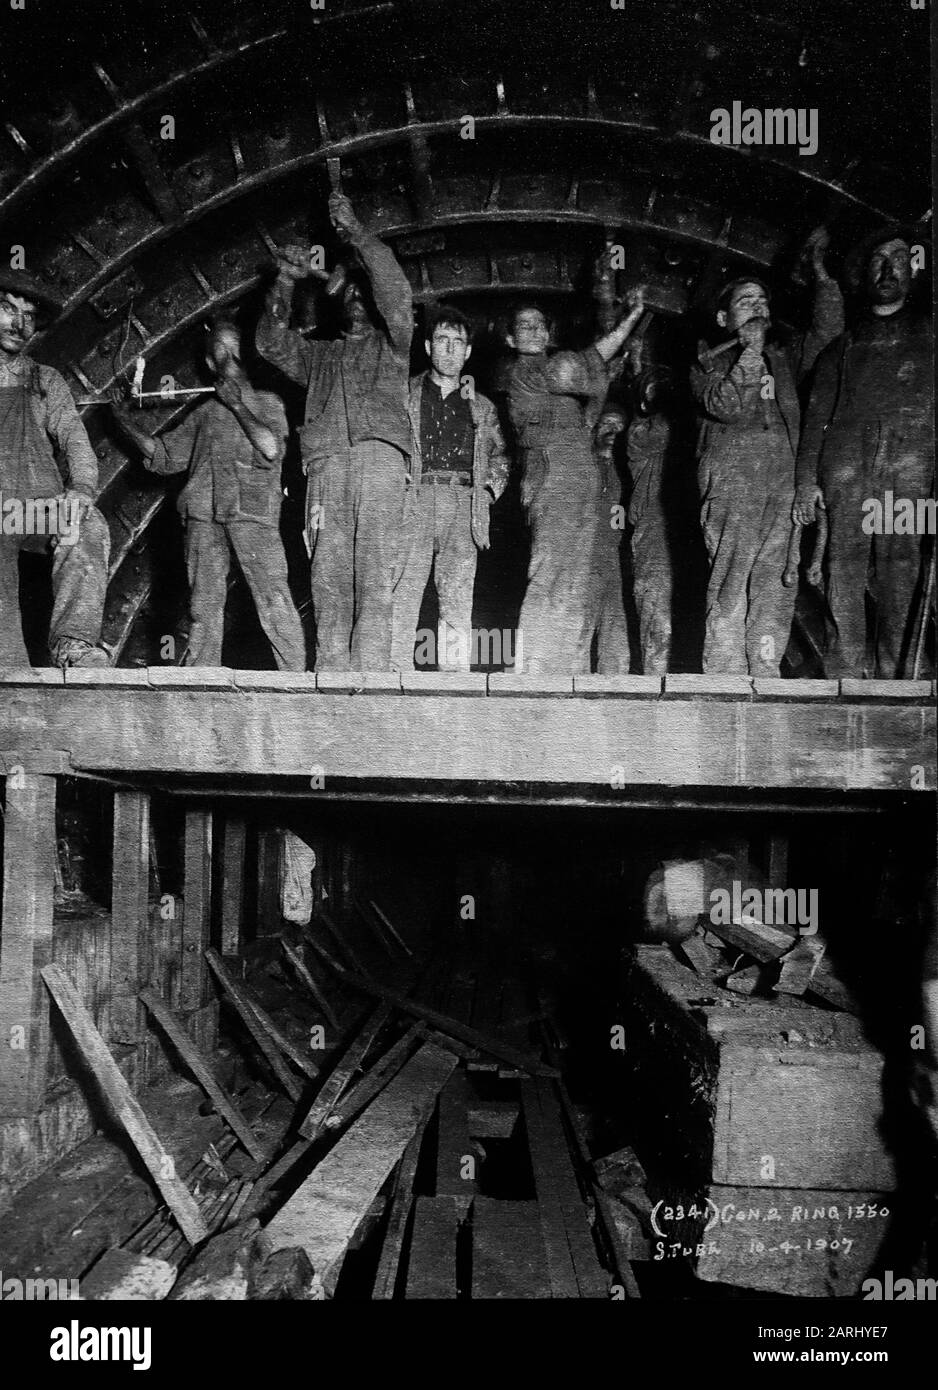 Fotografie aus dem frühen 20. Jahrhundert, auf der Bauarbeiter im Tunnel der New York City Subway zu sehen sind Stockfoto